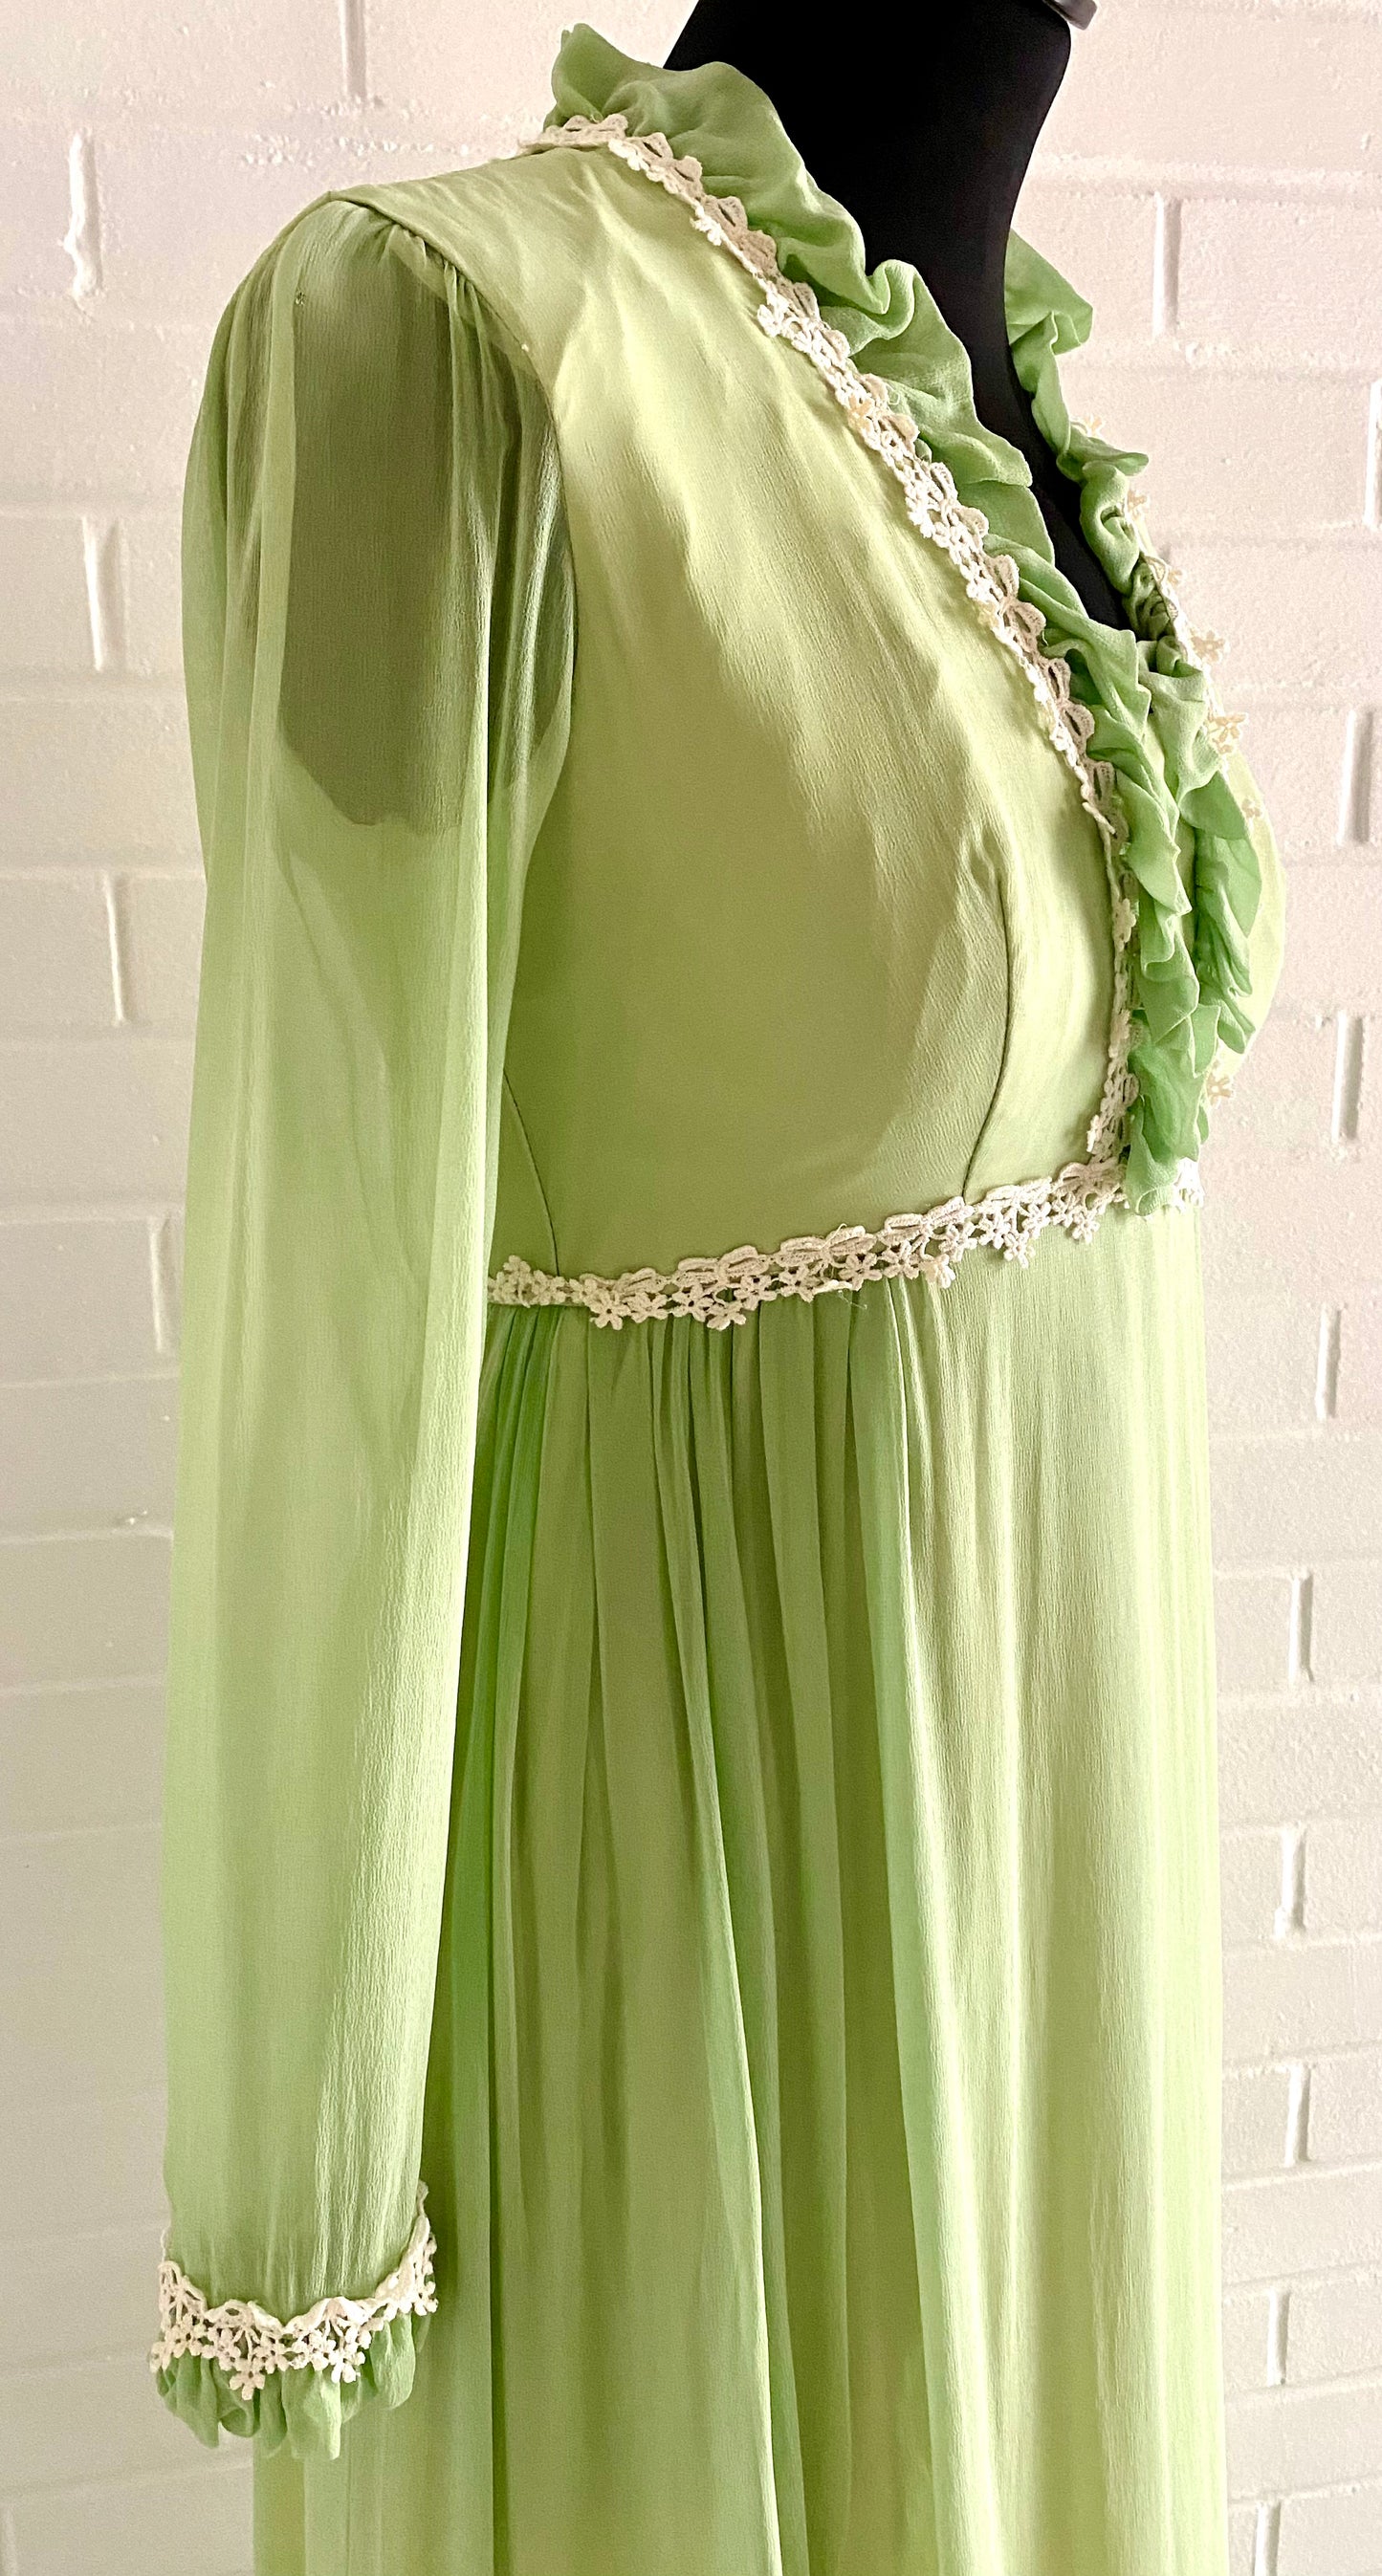 1960s Light Green Chiffon & Taffeta Maxi Dress